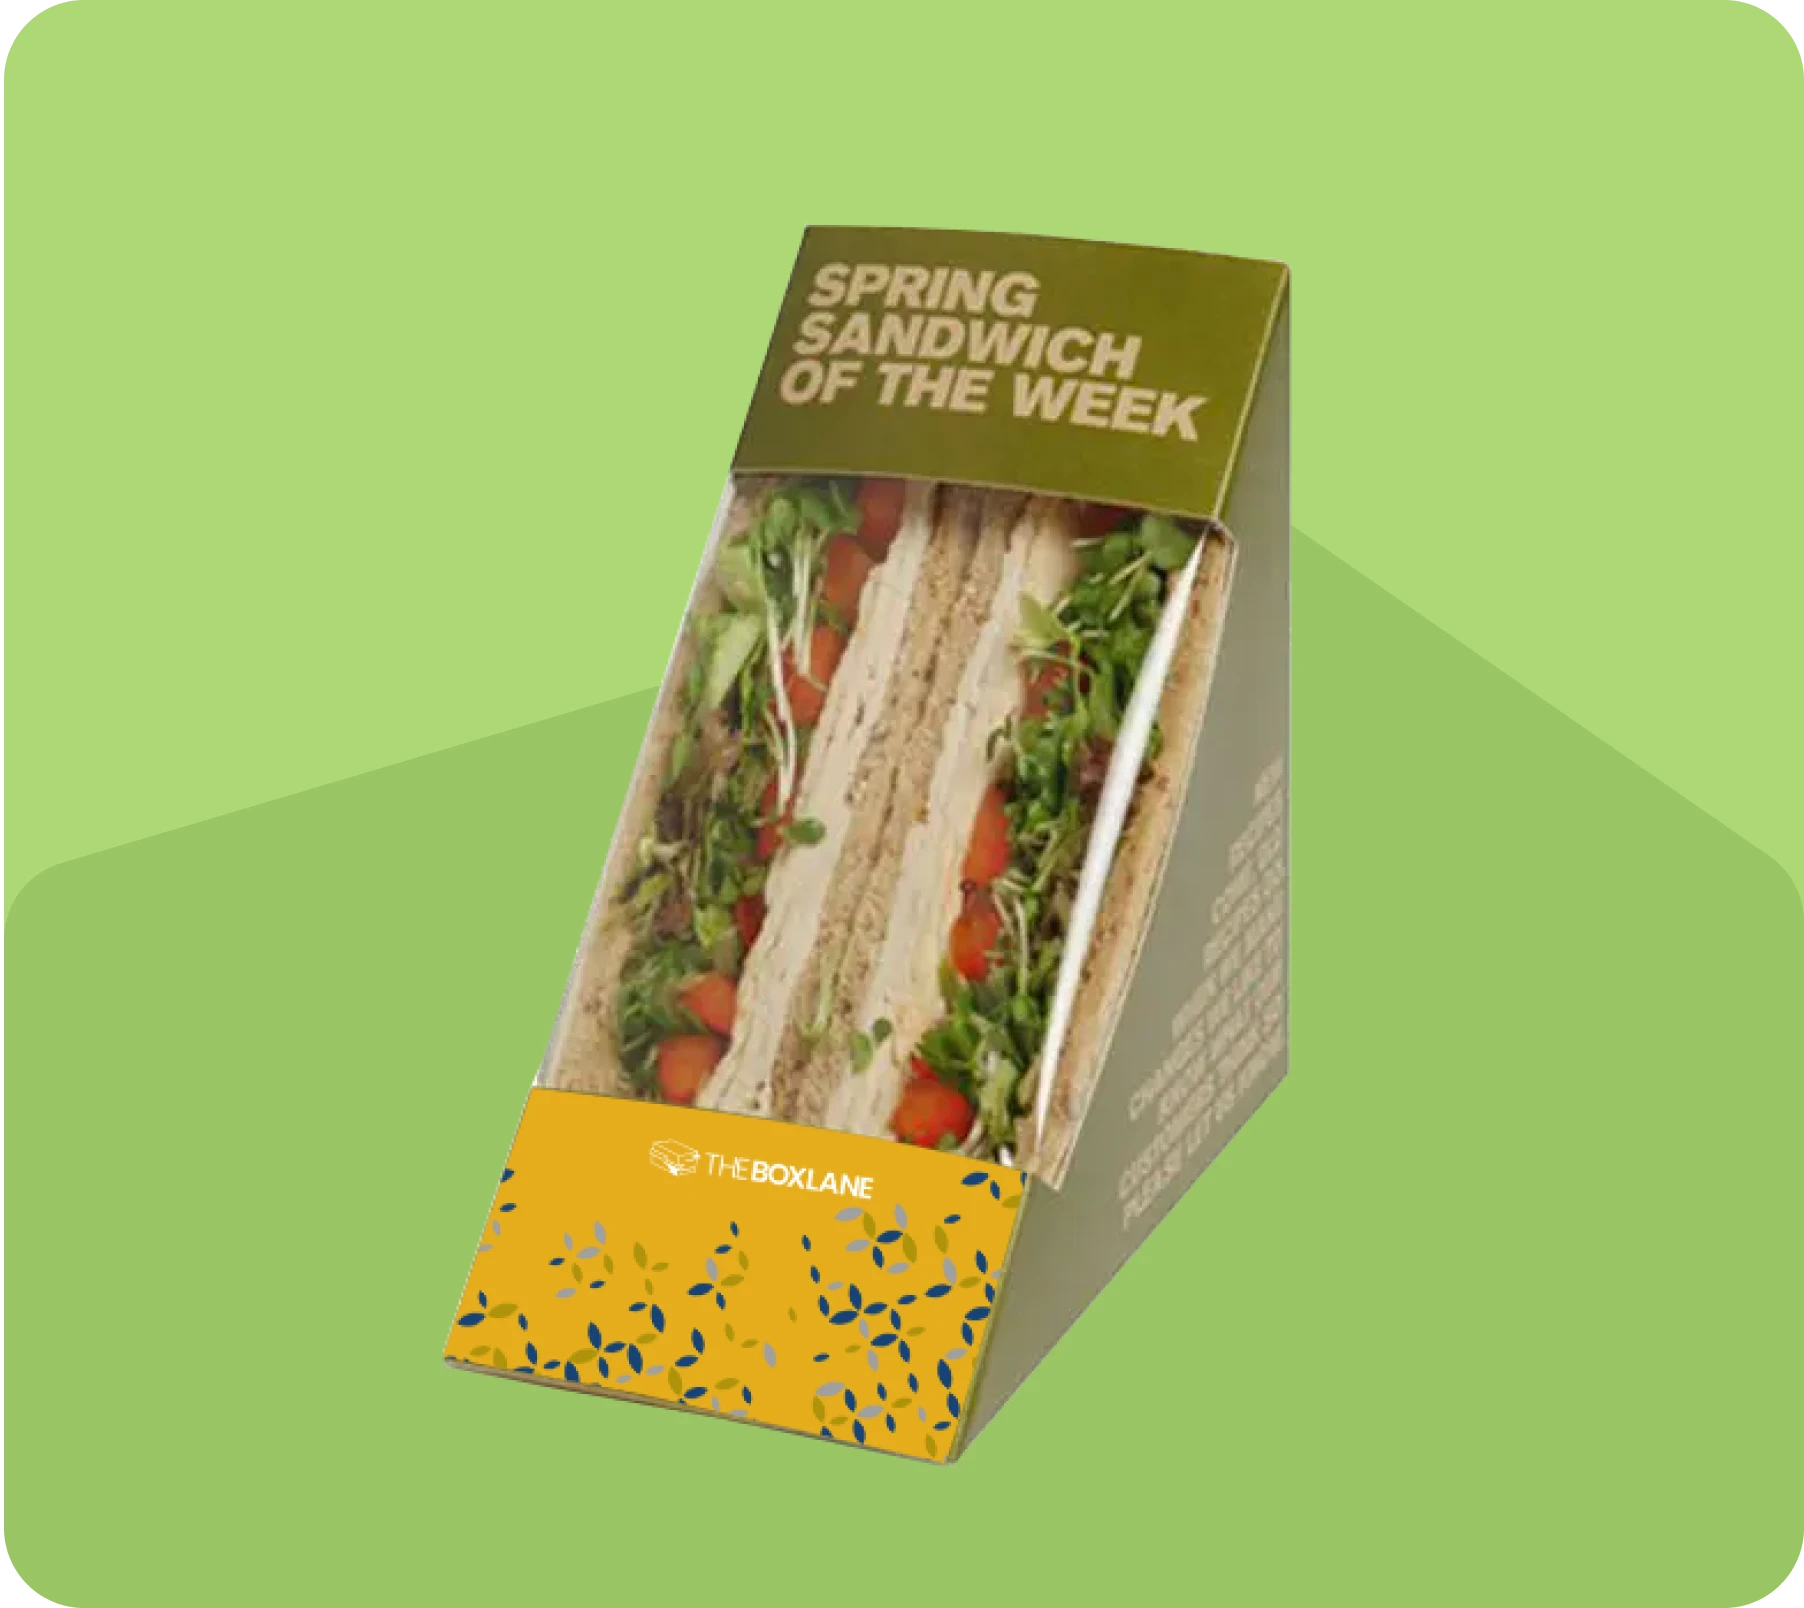 Choose The Box Lane for Custom Sandwich Boxes | The Box Lane